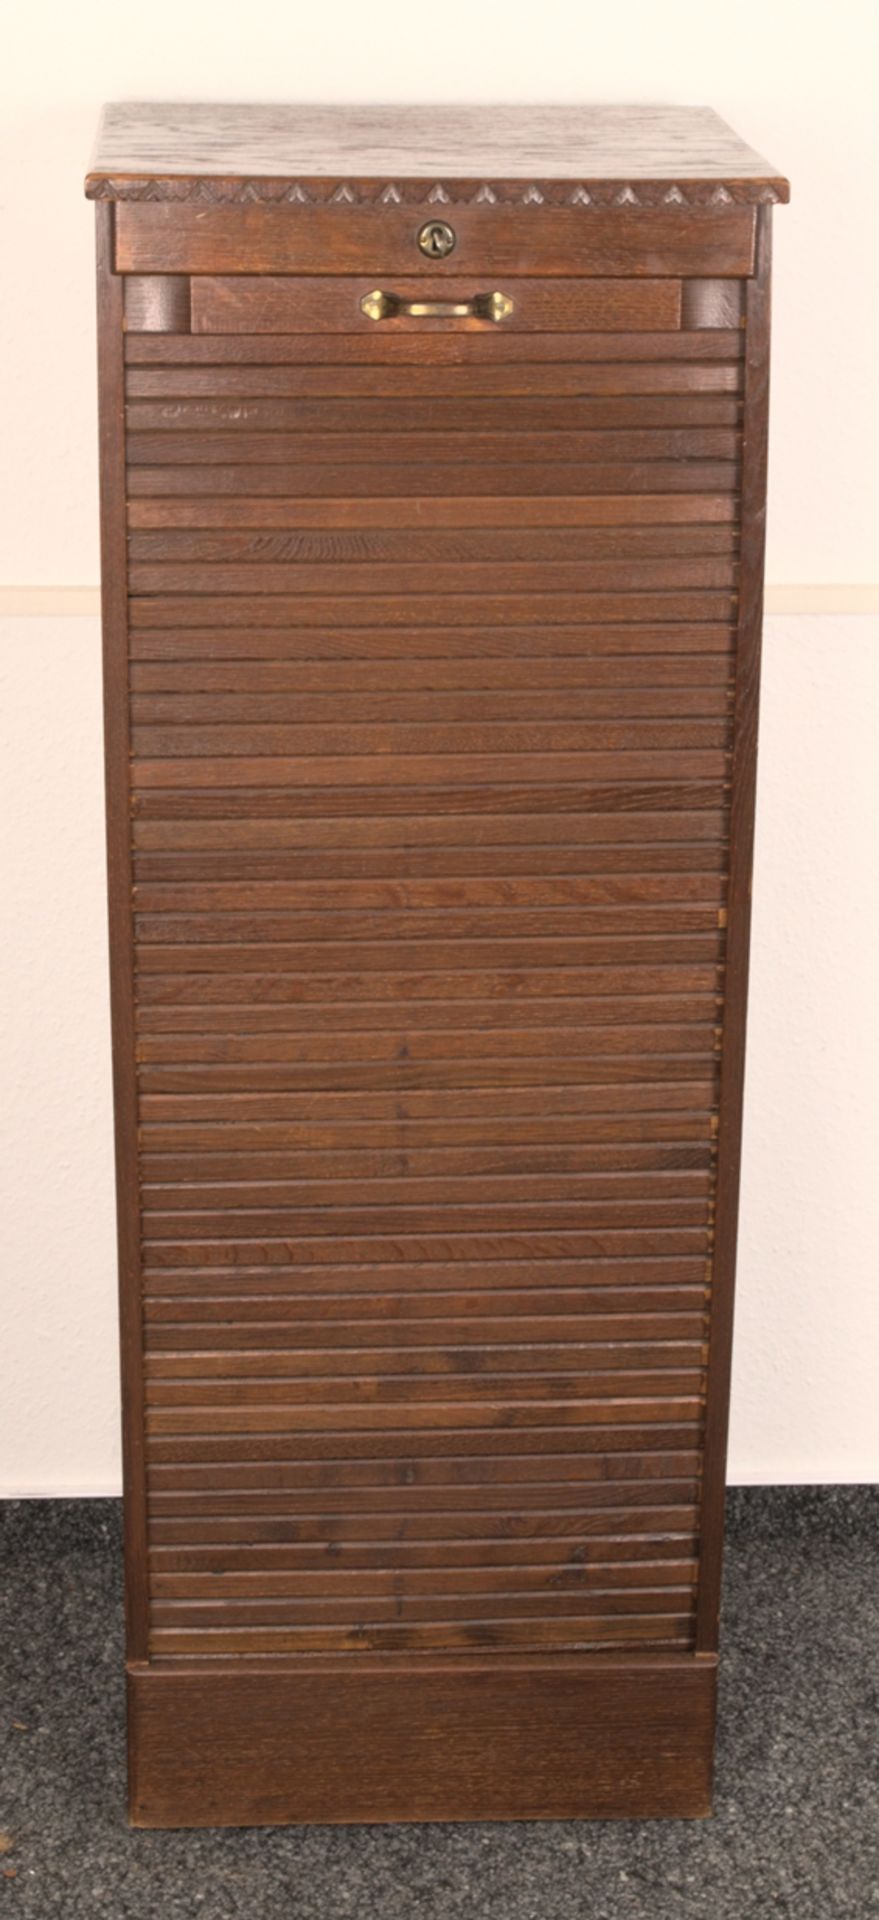 Rolladenschrank auf Rollen, Eiche, 1920er/30er Jahre, schöner Erhalt. Ca. 122 x 45 x 39 cm.